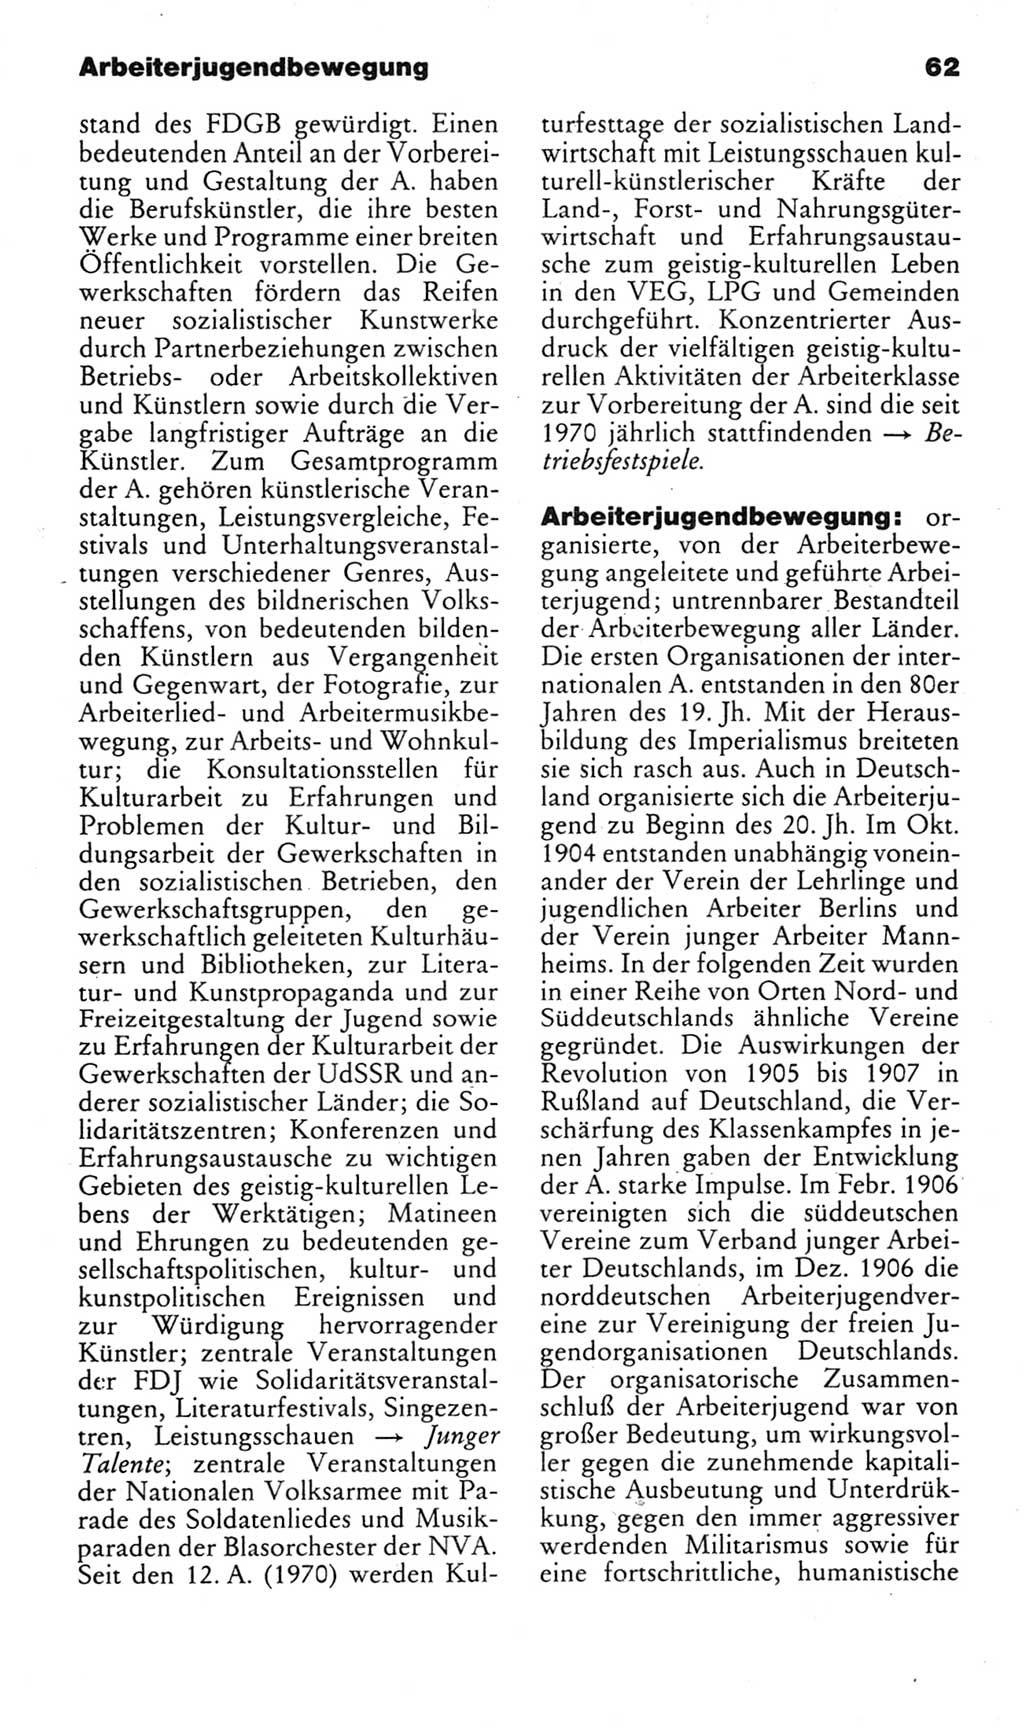 Kleines politisches Wörterbuch [Deutsche Demokratische Republik (DDR)] 1985, Seite 62 (Kl. pol. Wb. DDR 1985, S. 62)